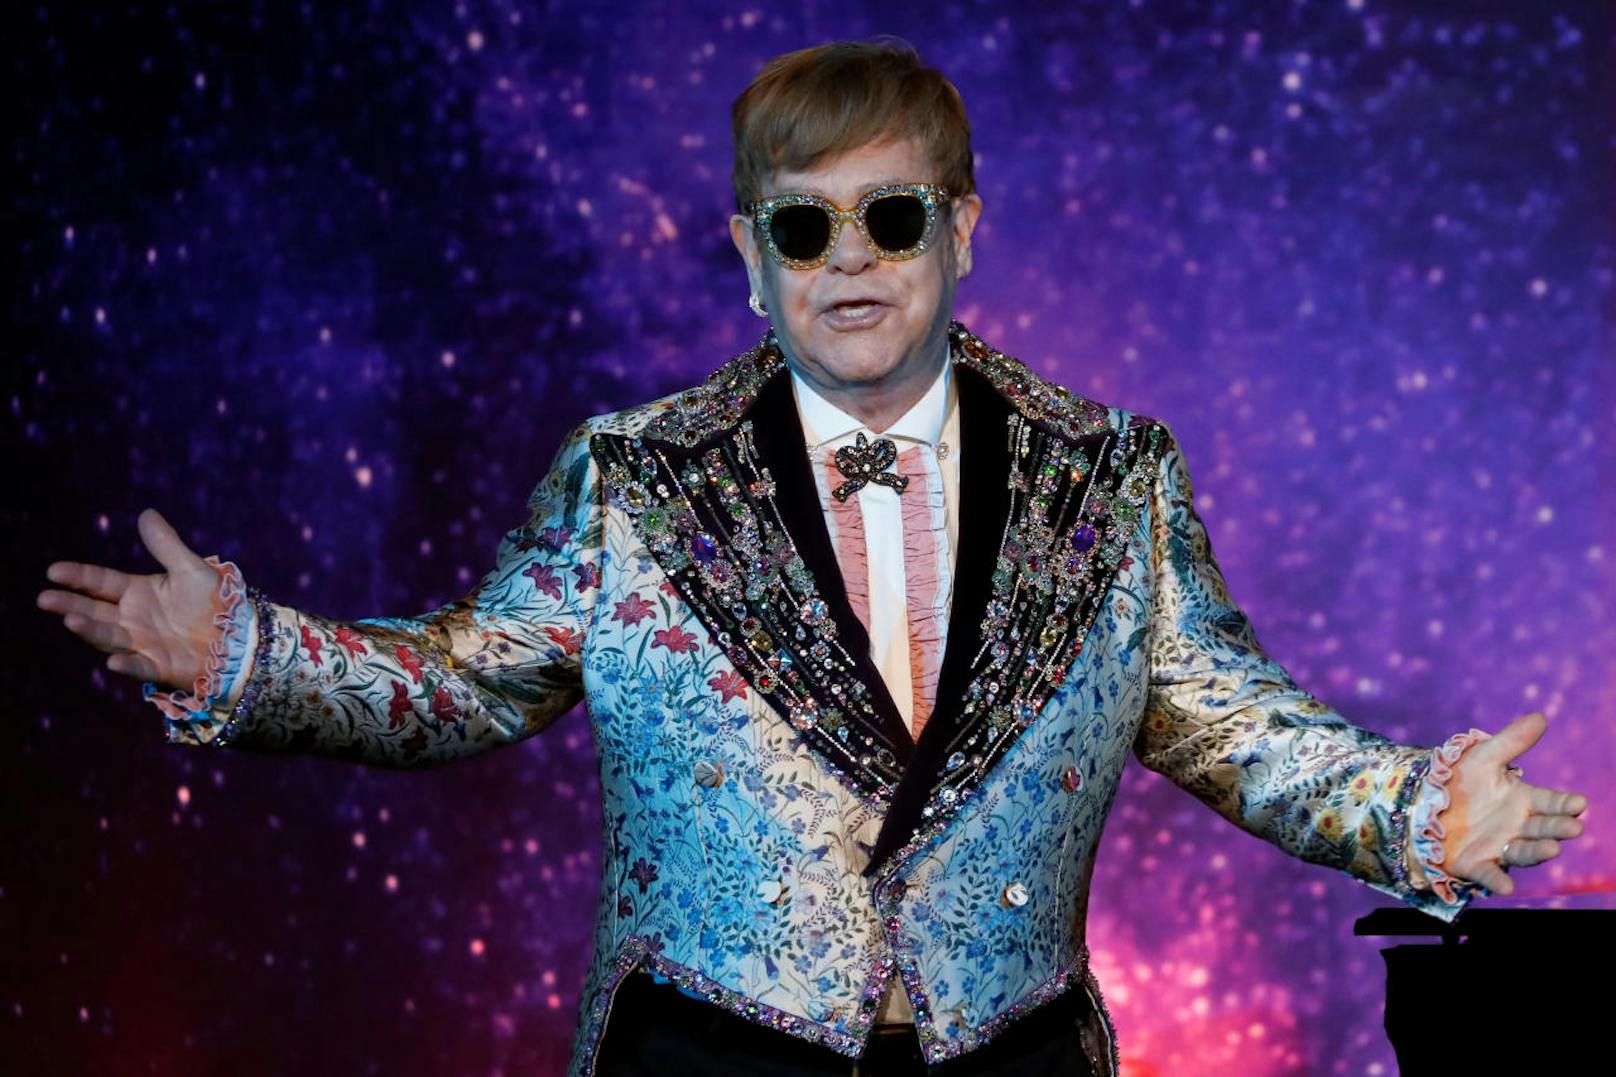 Elton John meinte, er sei in einem Alter, wo er mehr Zeit für seine Kinder haben wolle. Deshalb sei nach der großen Tour Schluss.